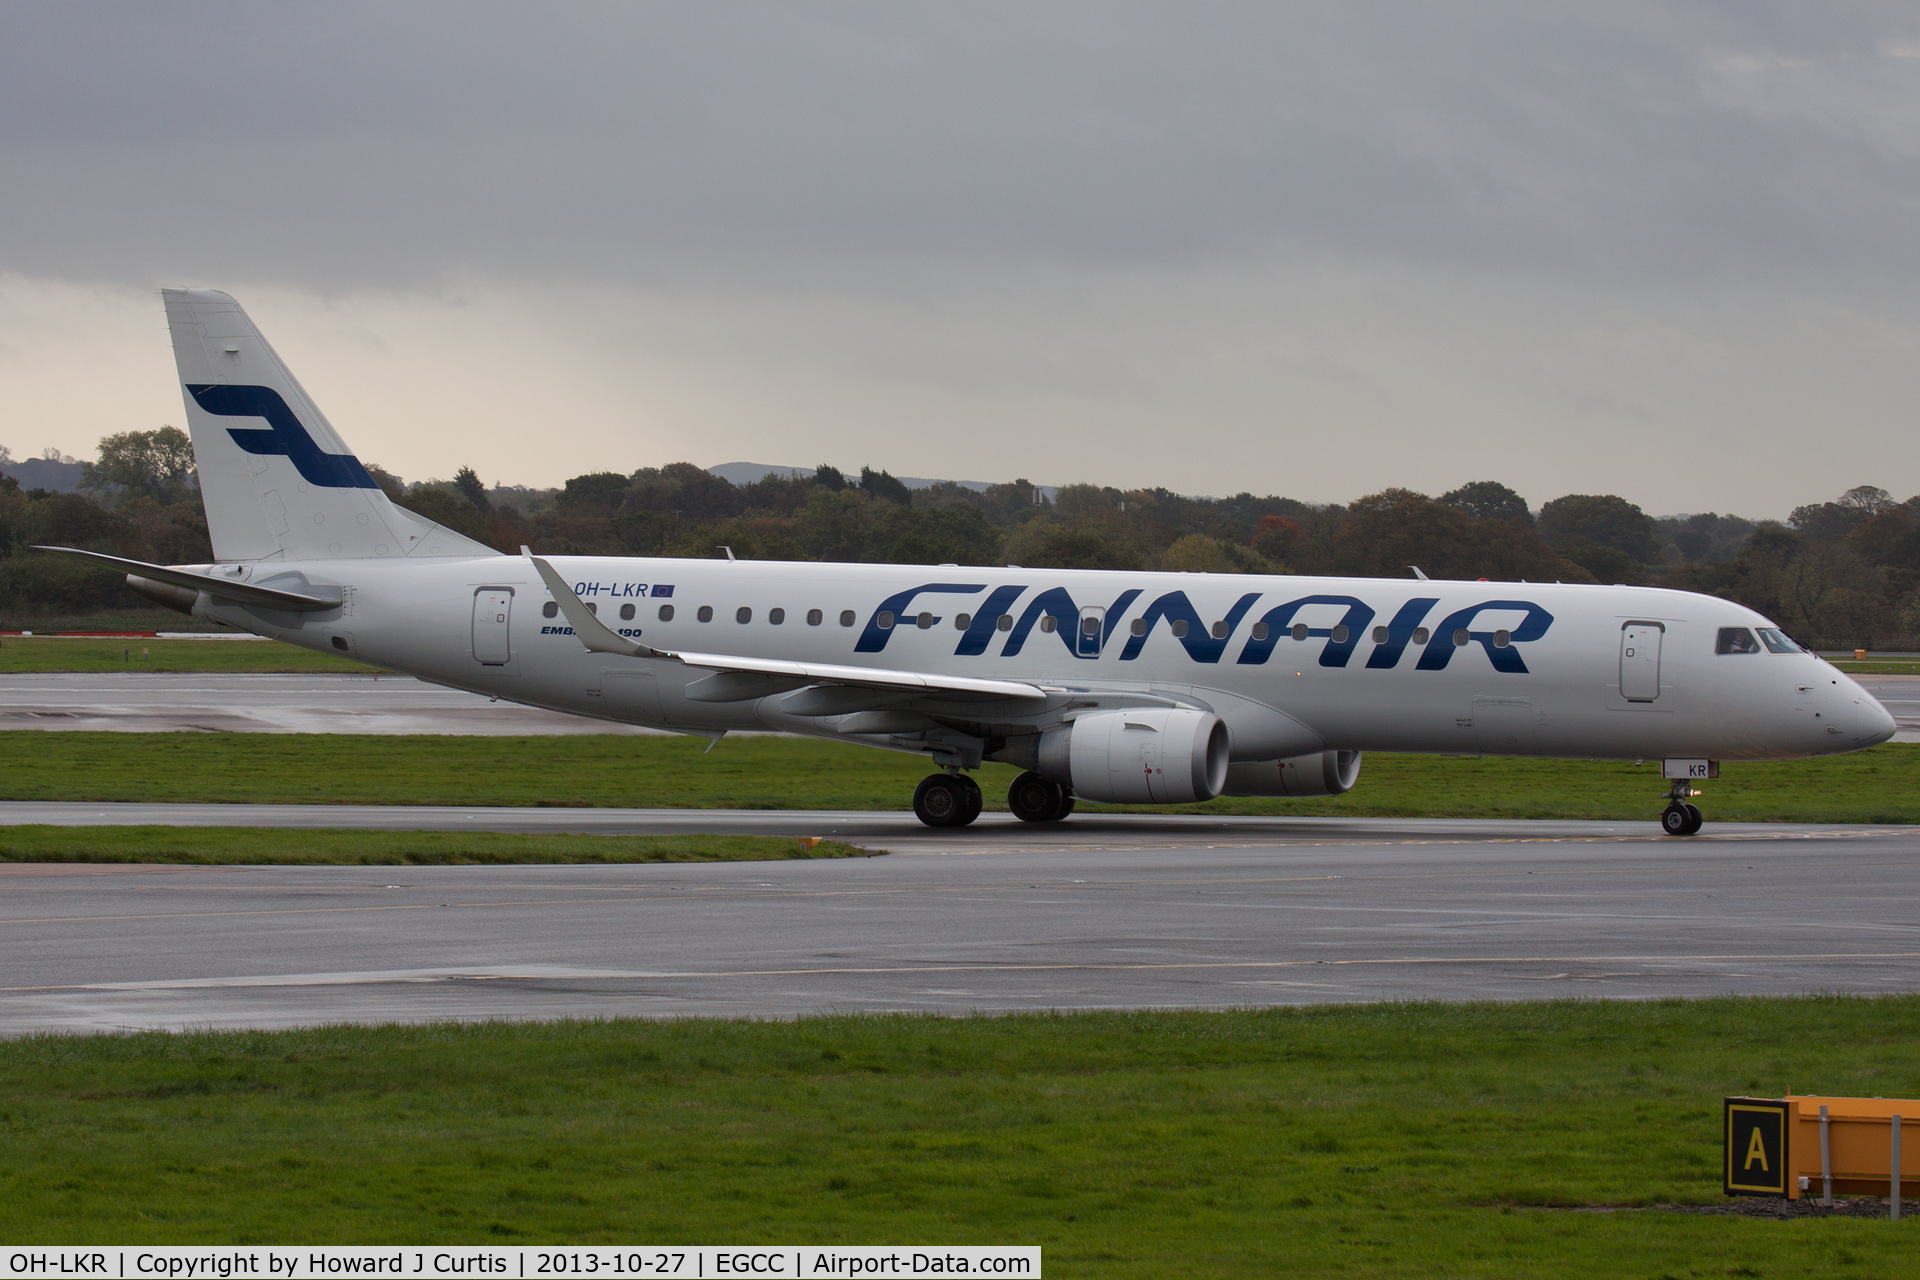 OH-LKR, 2011 Embraer 190LR (ERJ-190-100LR) C/N 19000436, Finnair, rolling out after landing.